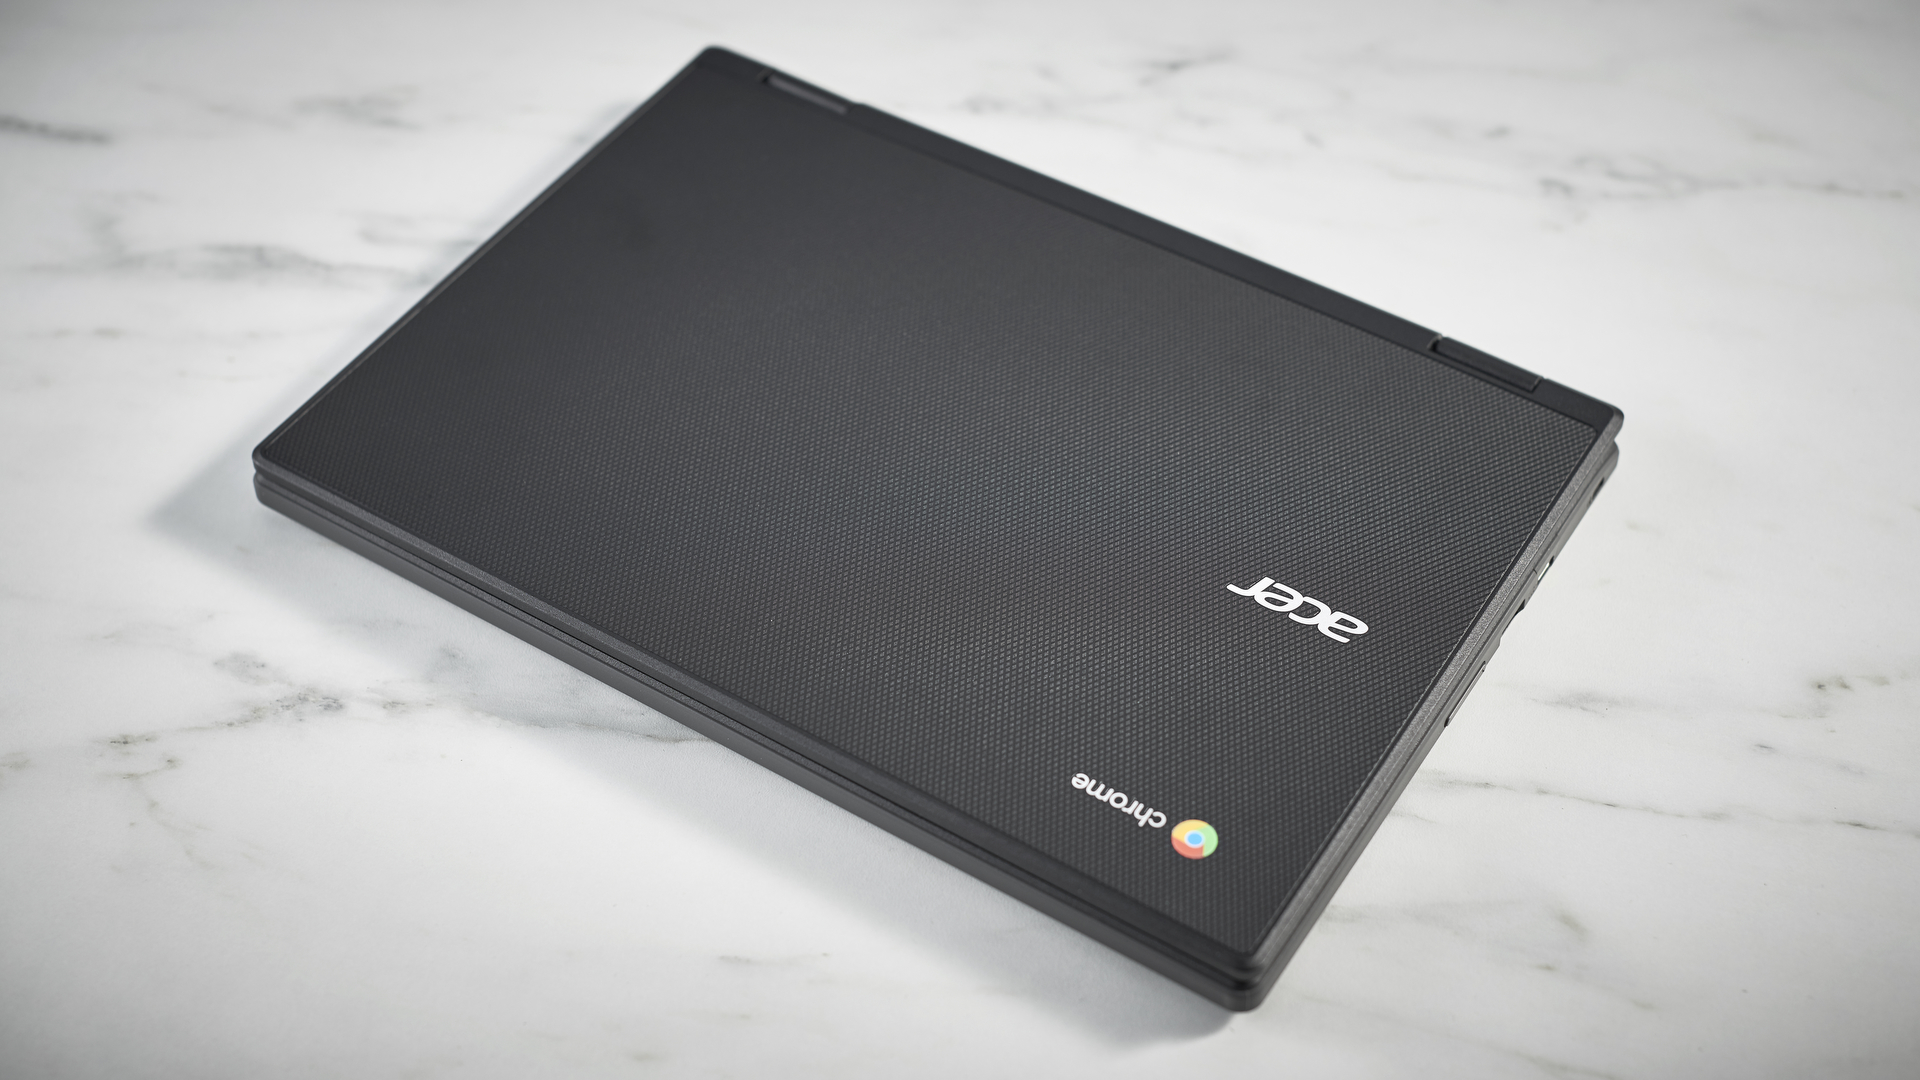 Acer Chromebook Spin 311 di atas meja